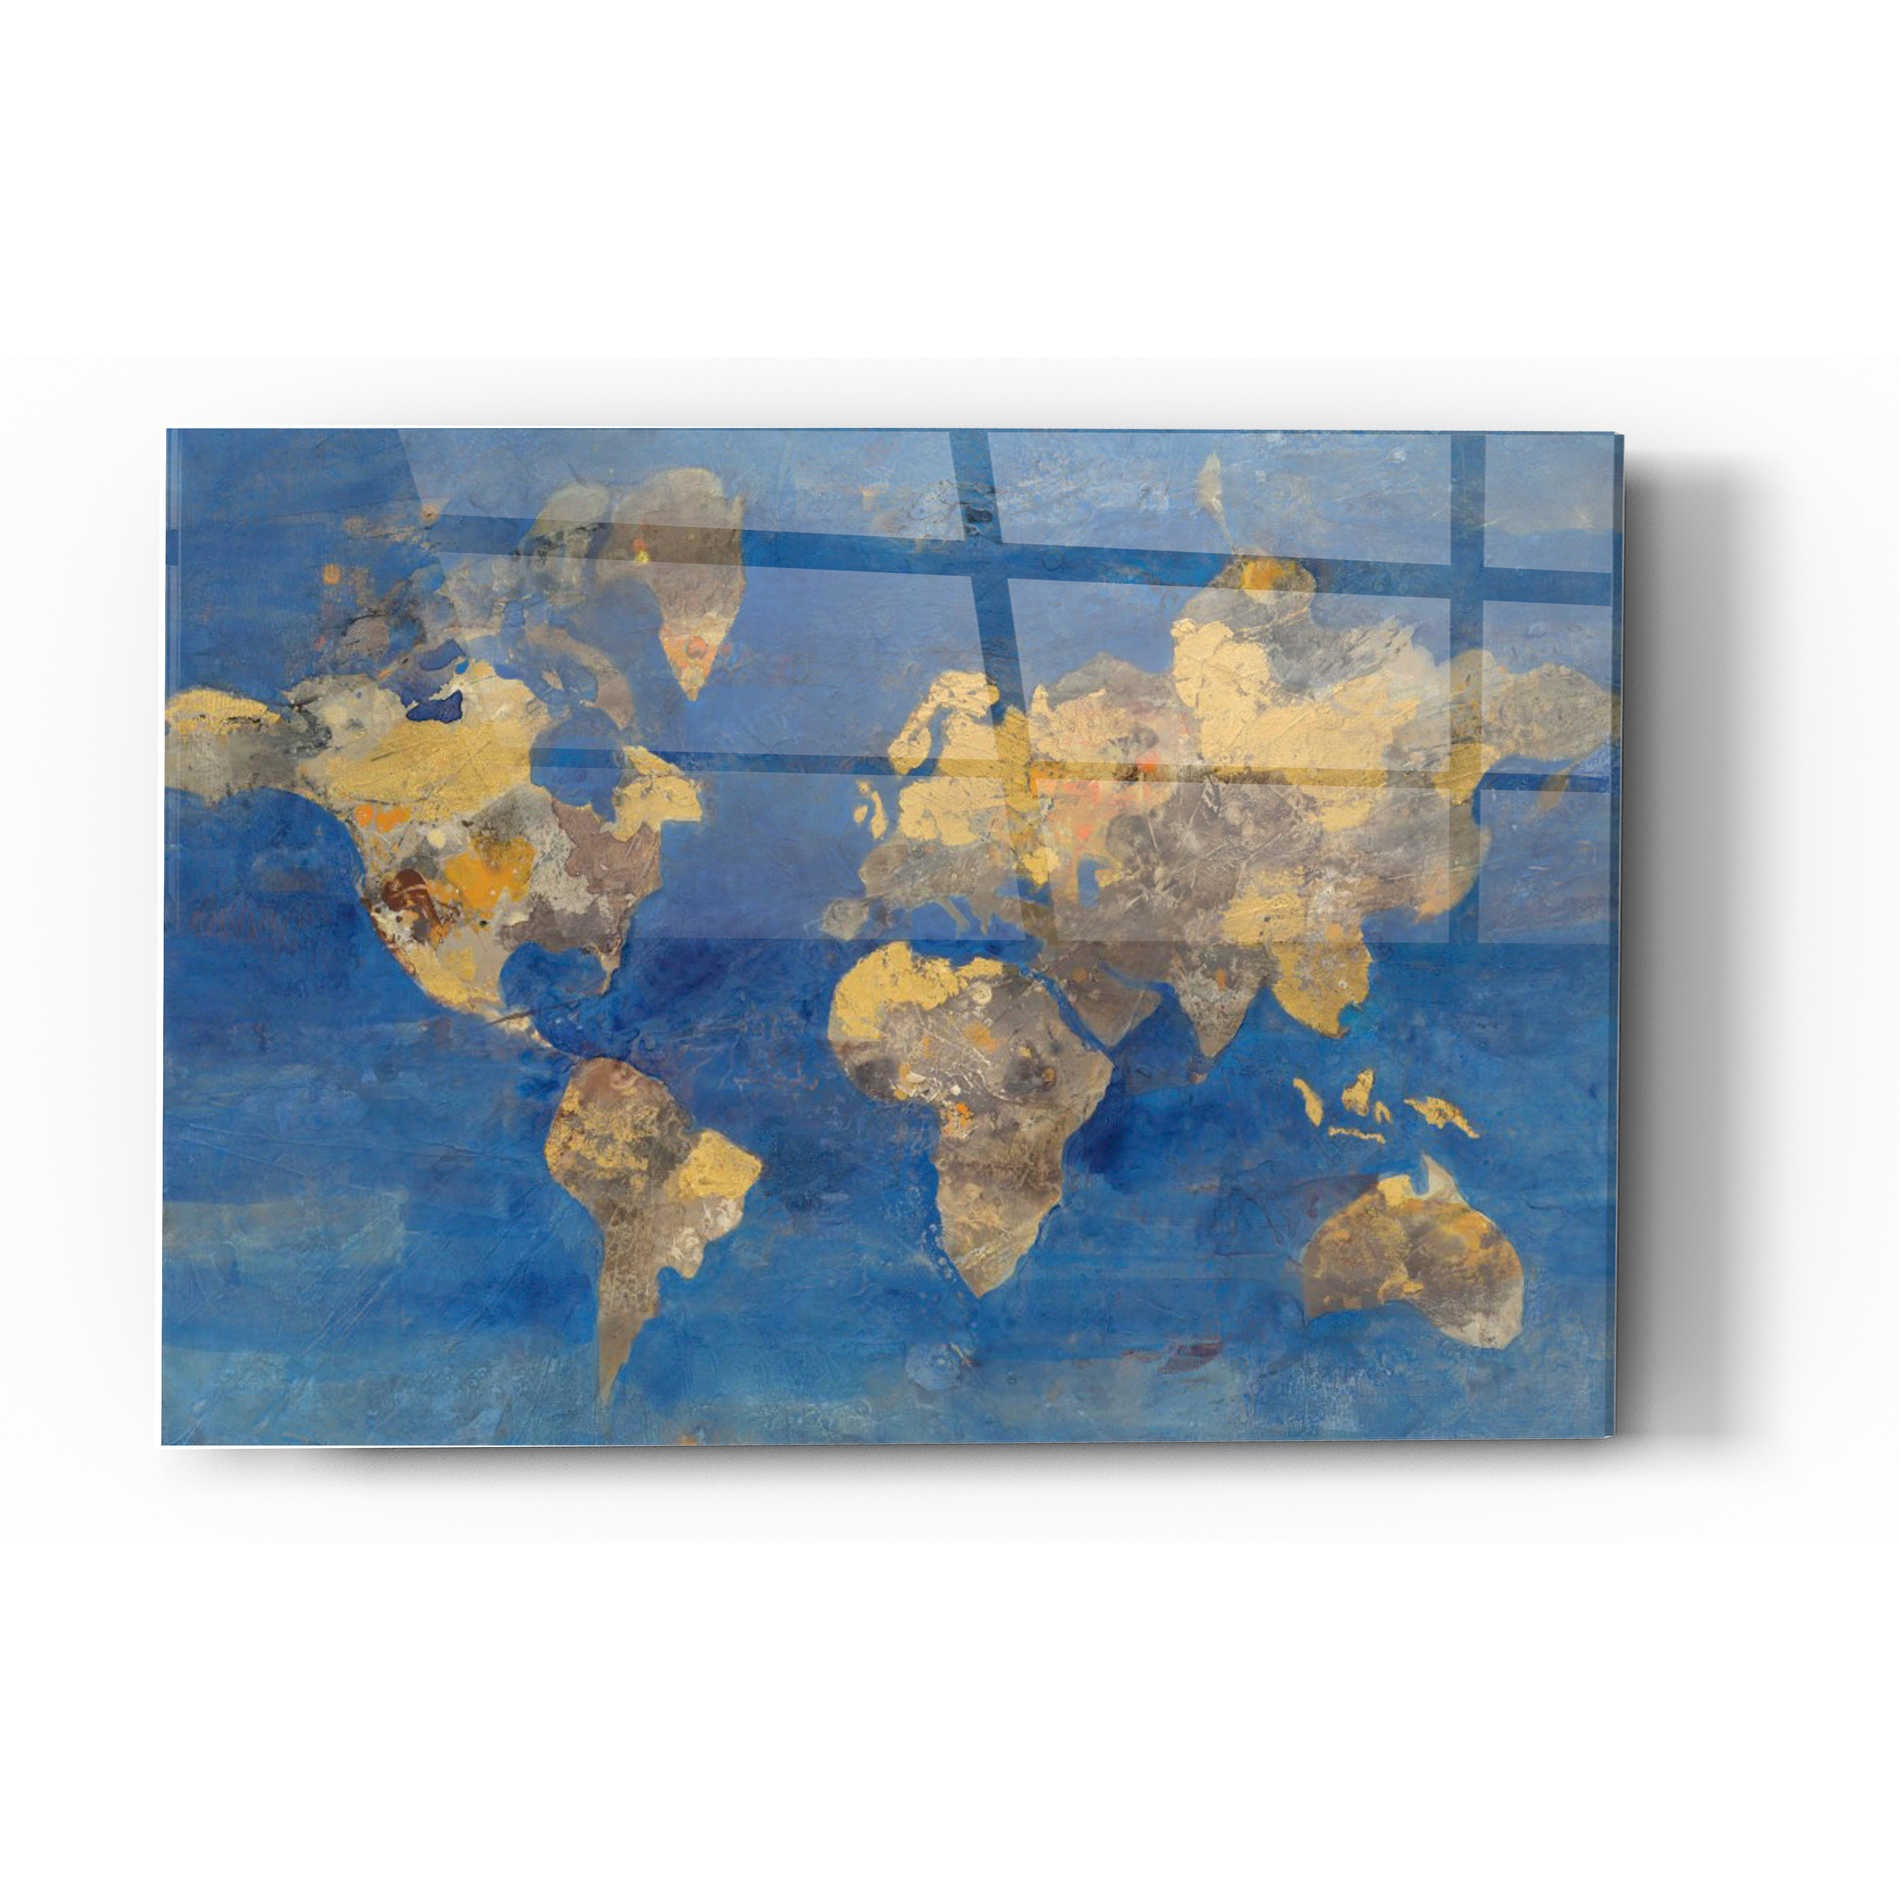 Epic Art 'Blue World' by Albena Hristova, Acrylic Glass Wall Art